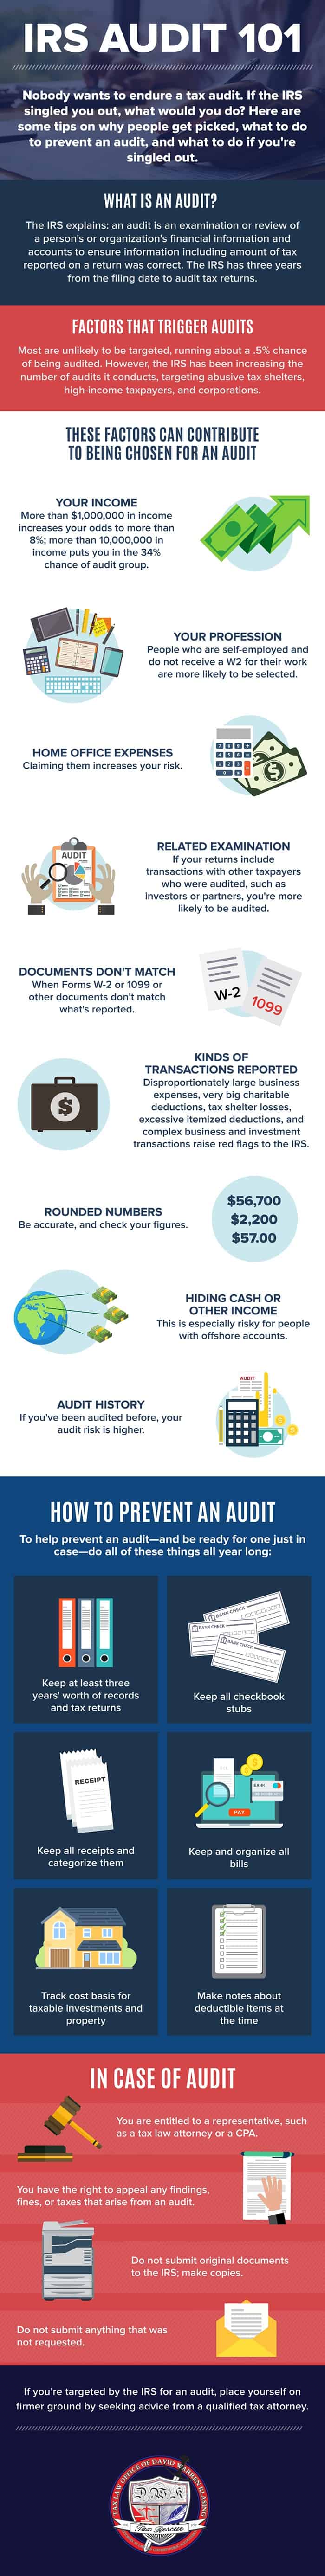 IRS Audit 101 Infographic v2